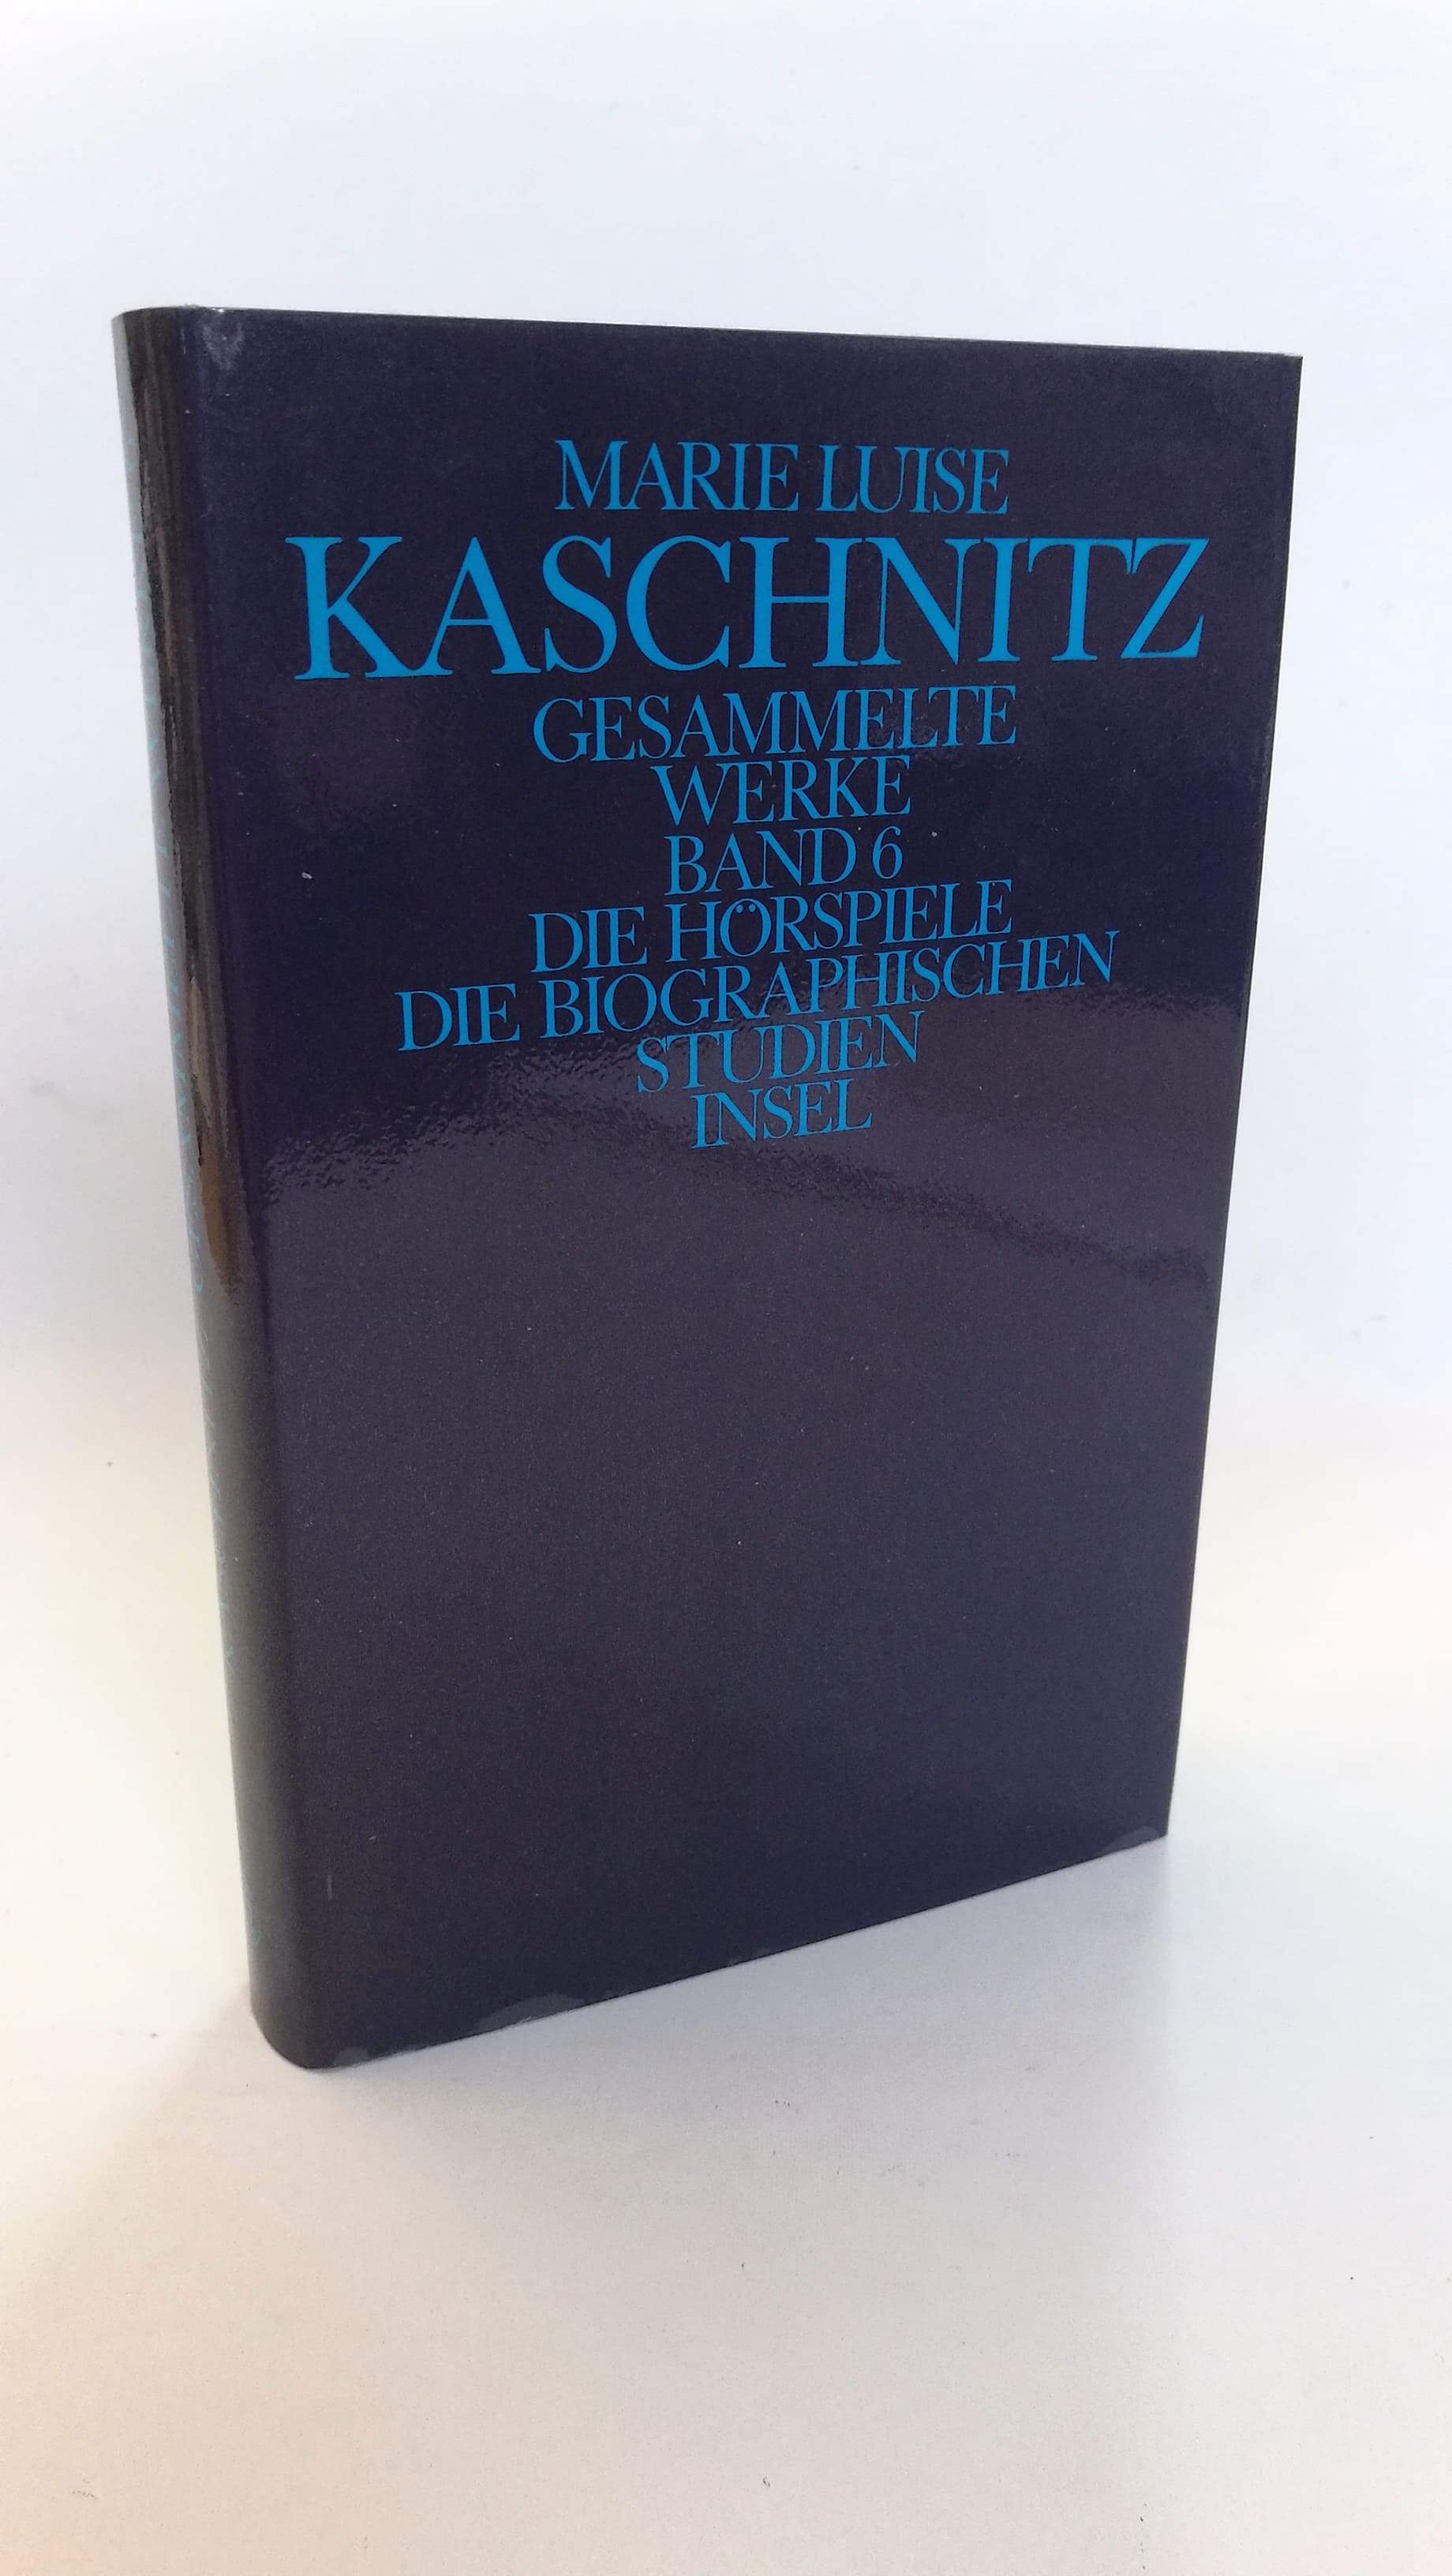 Gesammelte Werke in sieben Bänden. Band 6: Die Hörspiele. Die biographischen Studien. - Marie Luise Kaschnitz